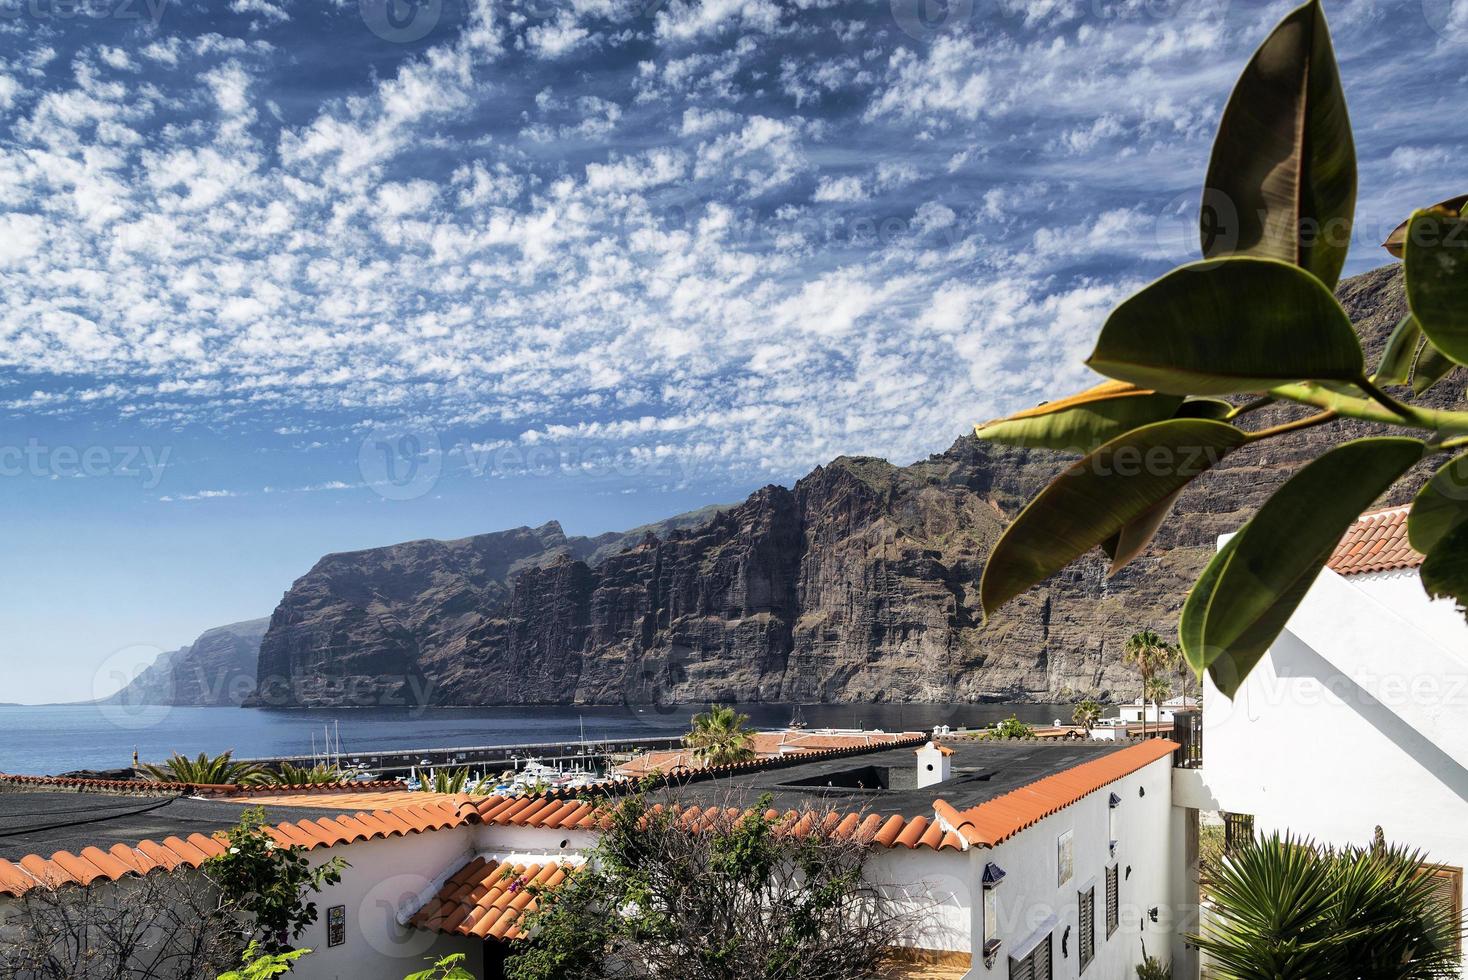 Los gigantes cliffs célèbre monument et village dans le sud de l'île de tenerife en espagne photo